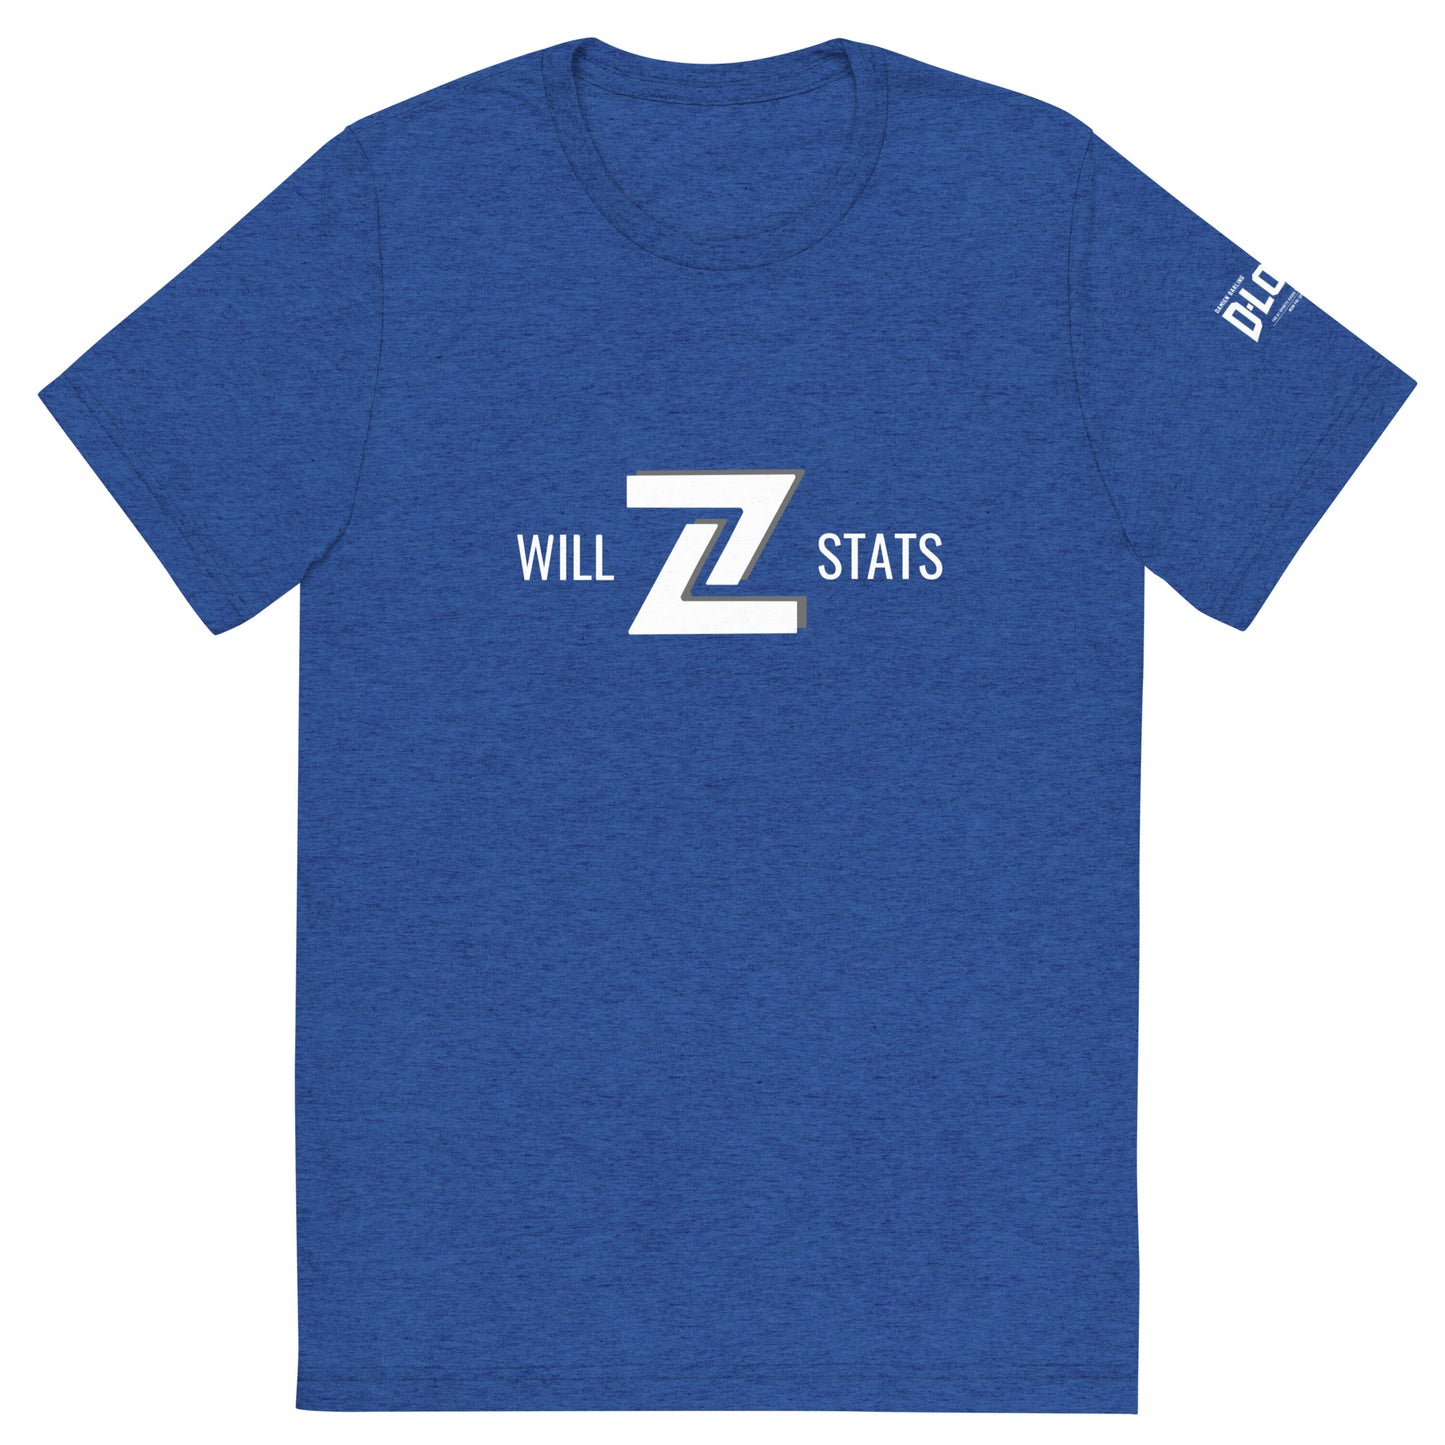 Will Z Stats - The Stattie Baddie Triblend